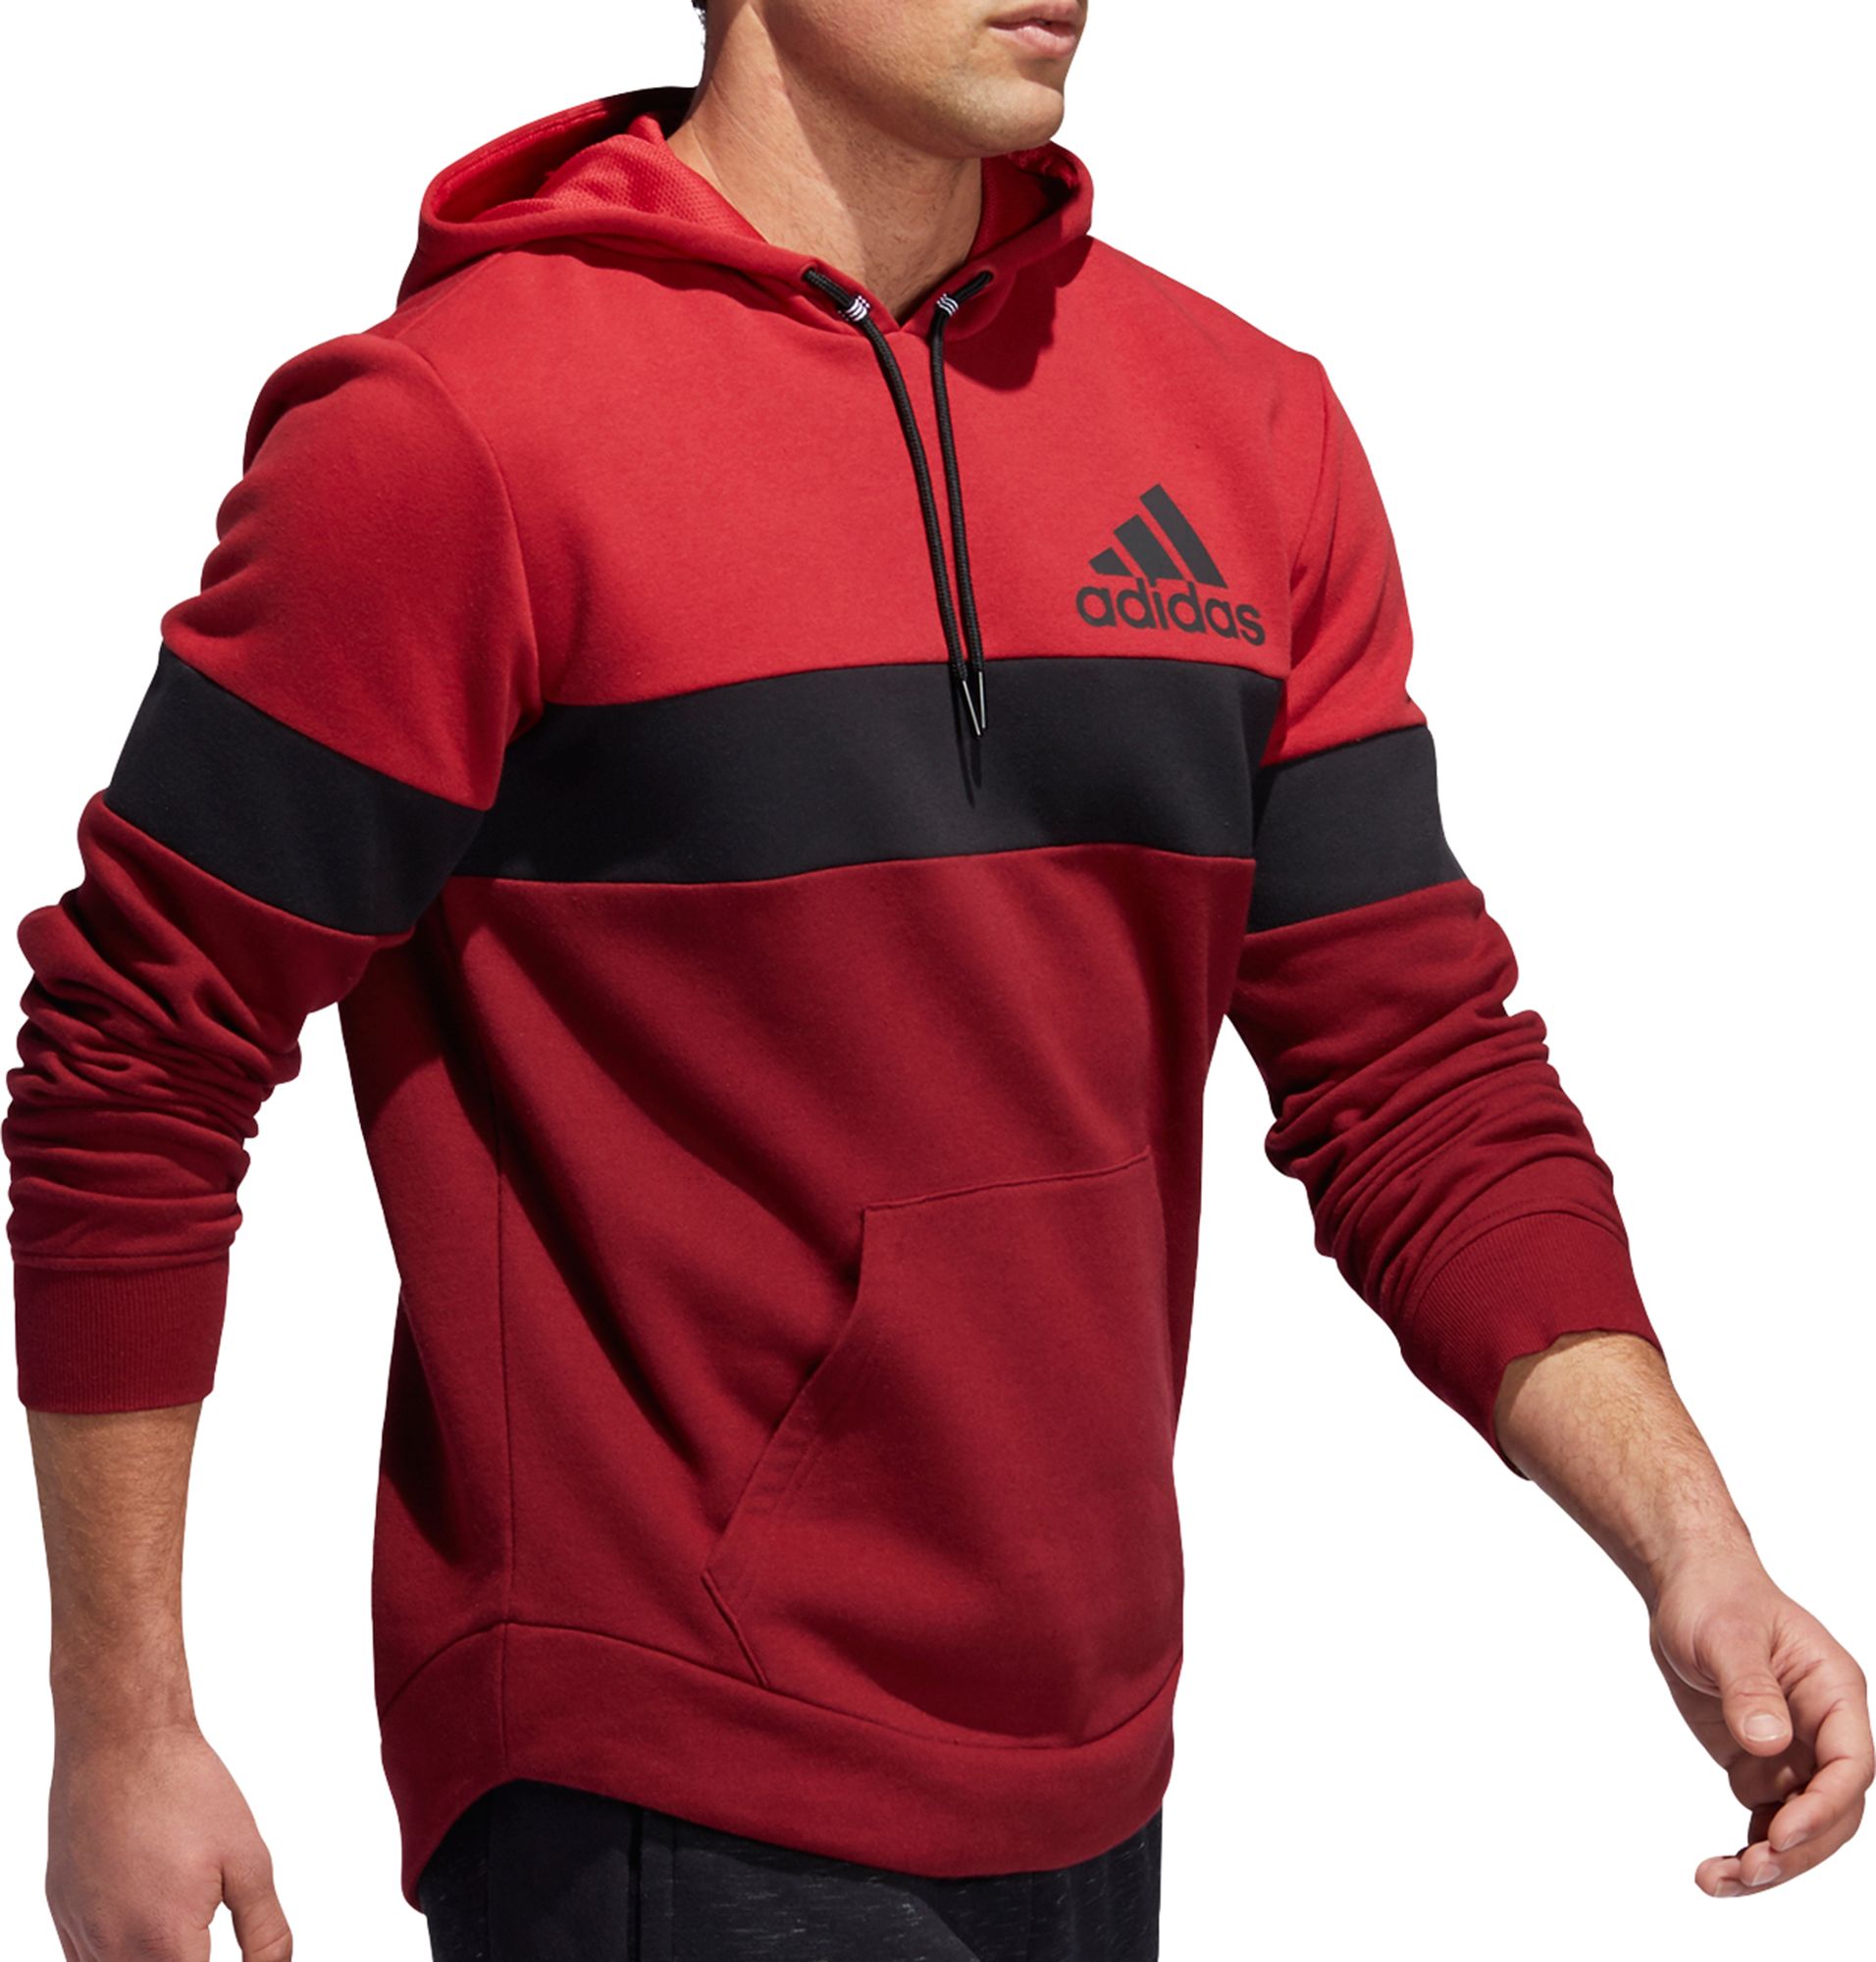 adidas men's post game hoodie